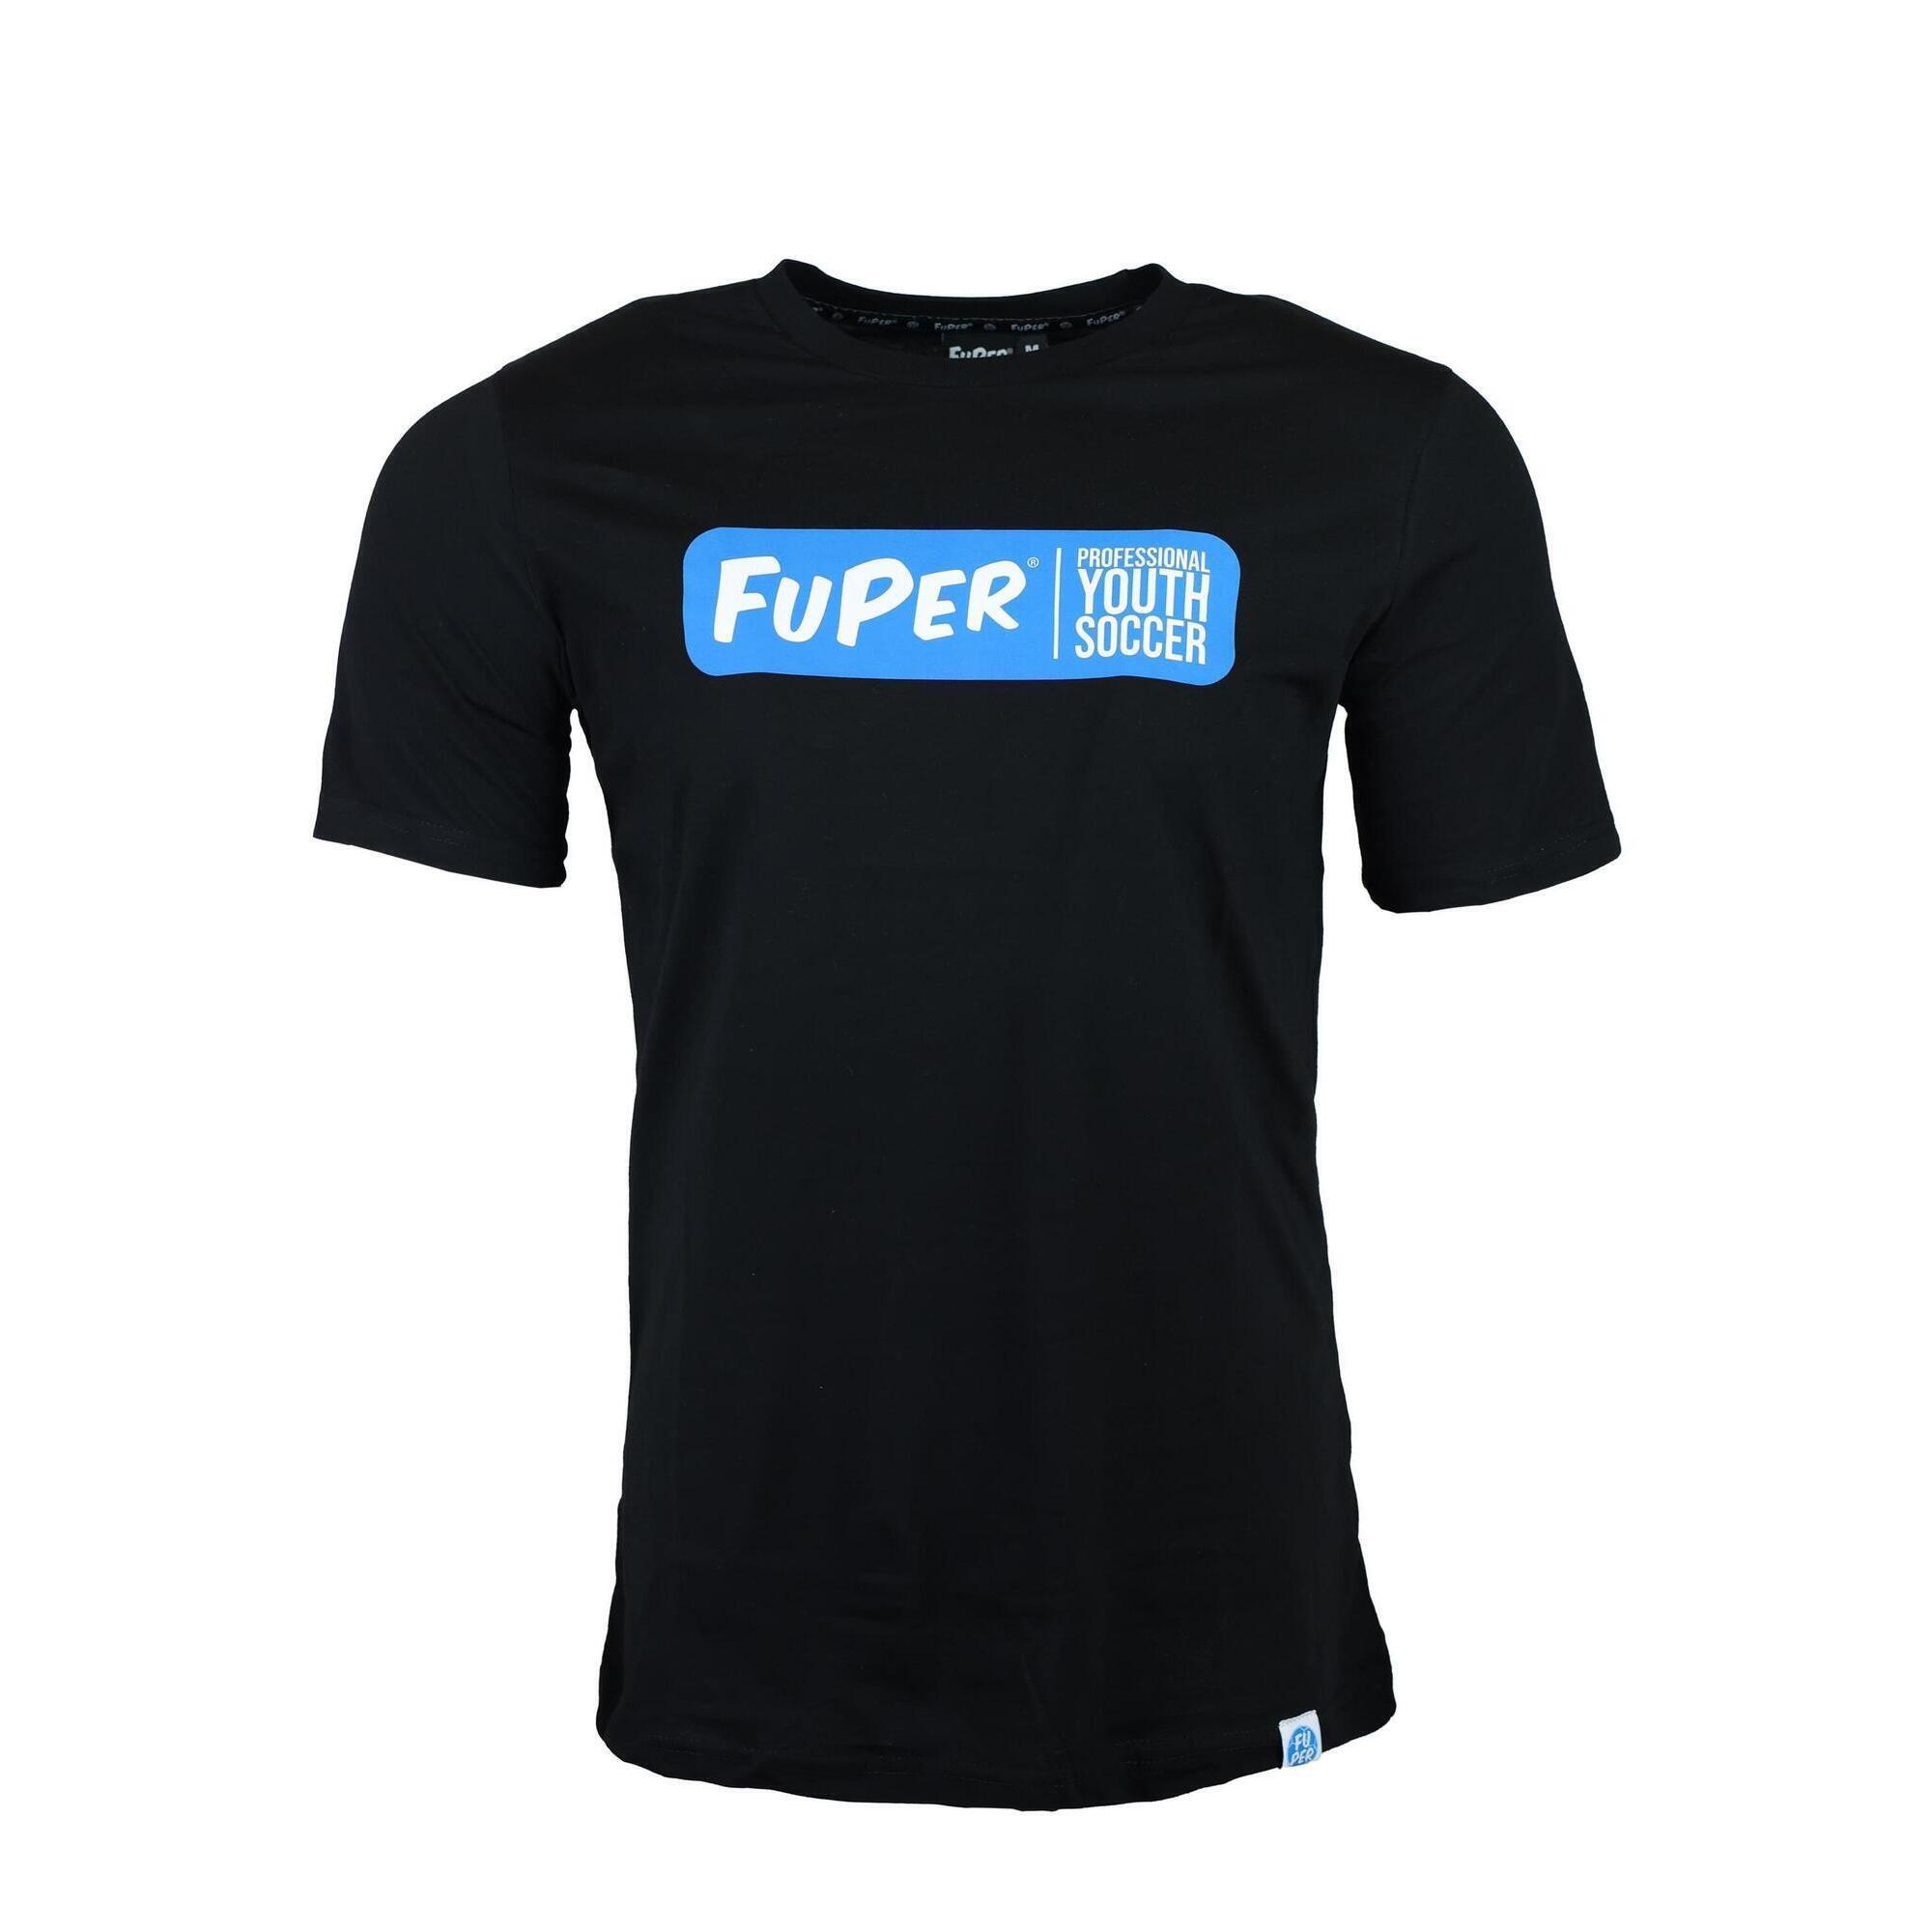 Спортивная футболка Juri Leisure, мужская футбольная дышащая футболка FUPER, черный